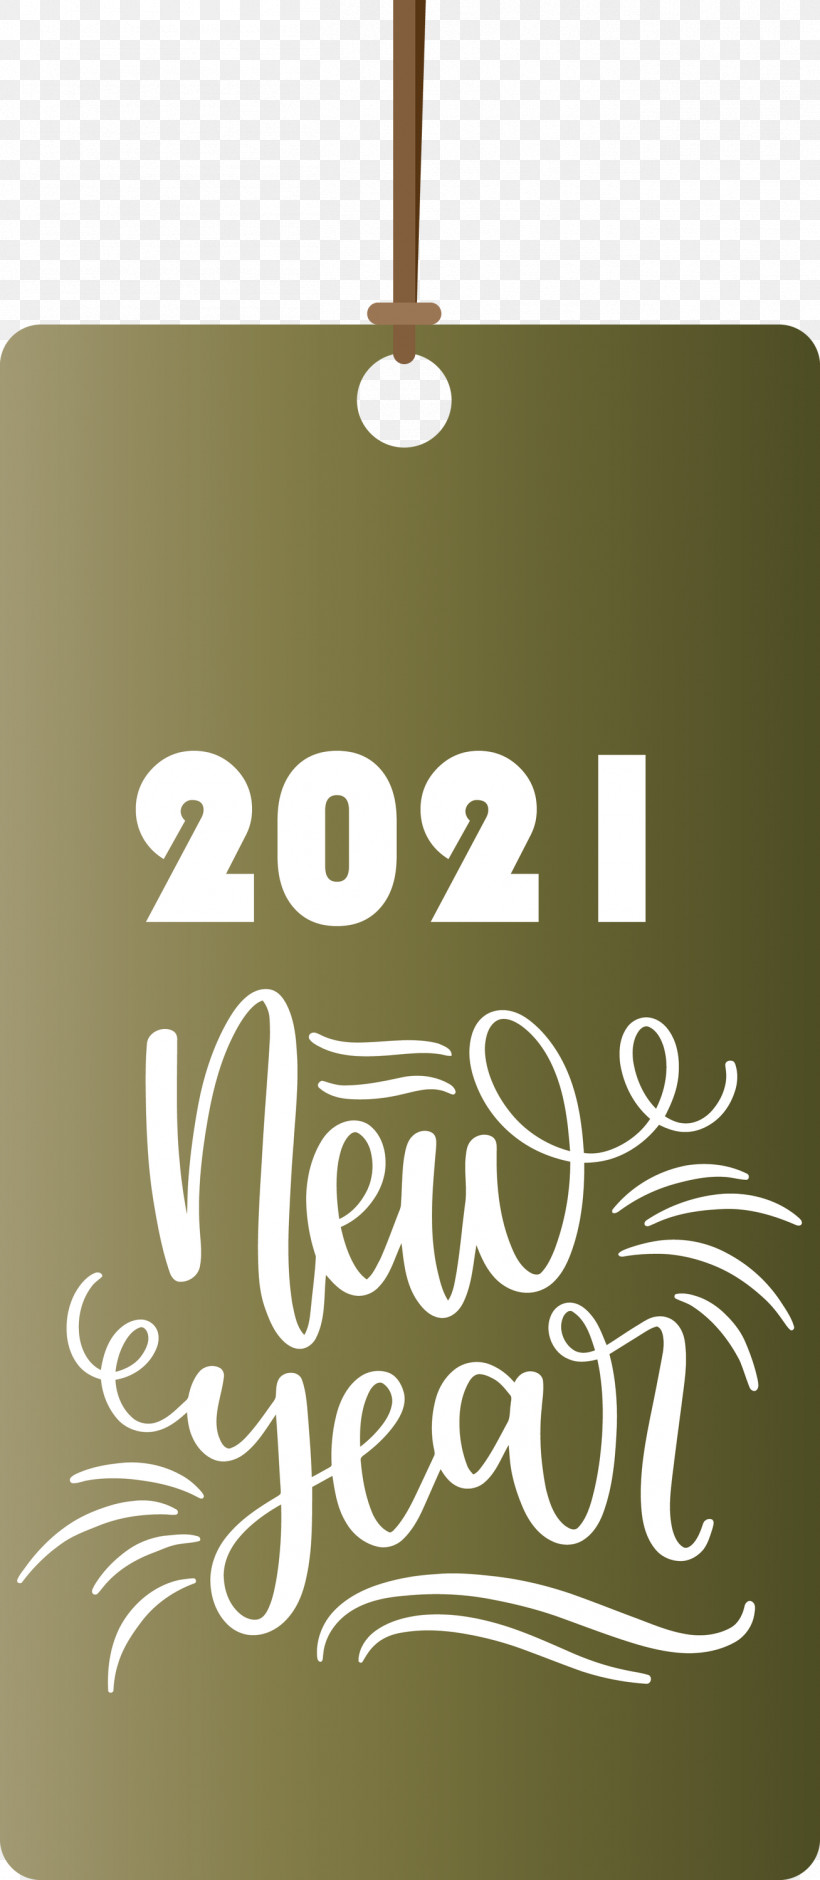 2021 Happy New Year 2021 Happy New Year Tag 2021 New Year, PNG, 1308x3000px, 2021 Happy New Year, 2021 Happy New Year Tag, 2021 New Year, Calligraphy, M Download Free